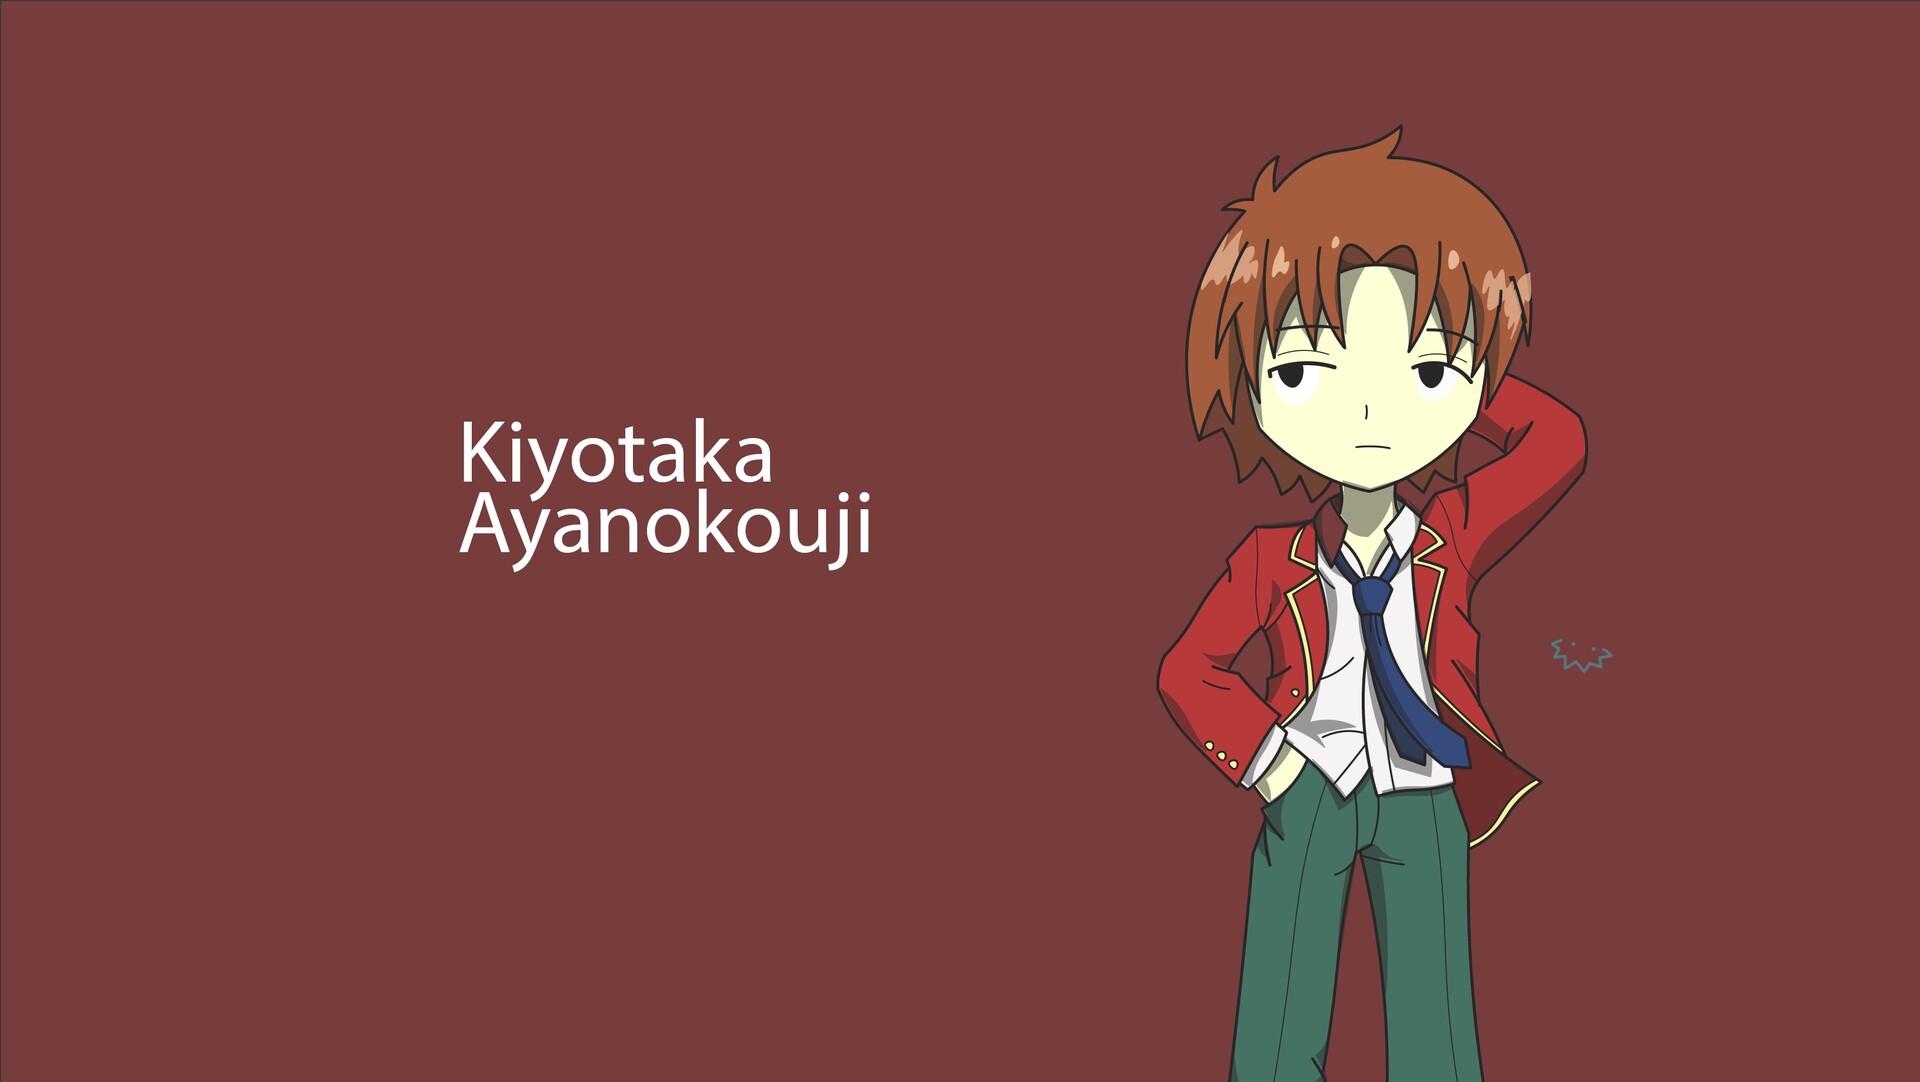 AI Art: Ayanokoji Kiyotaka by @SR_2027